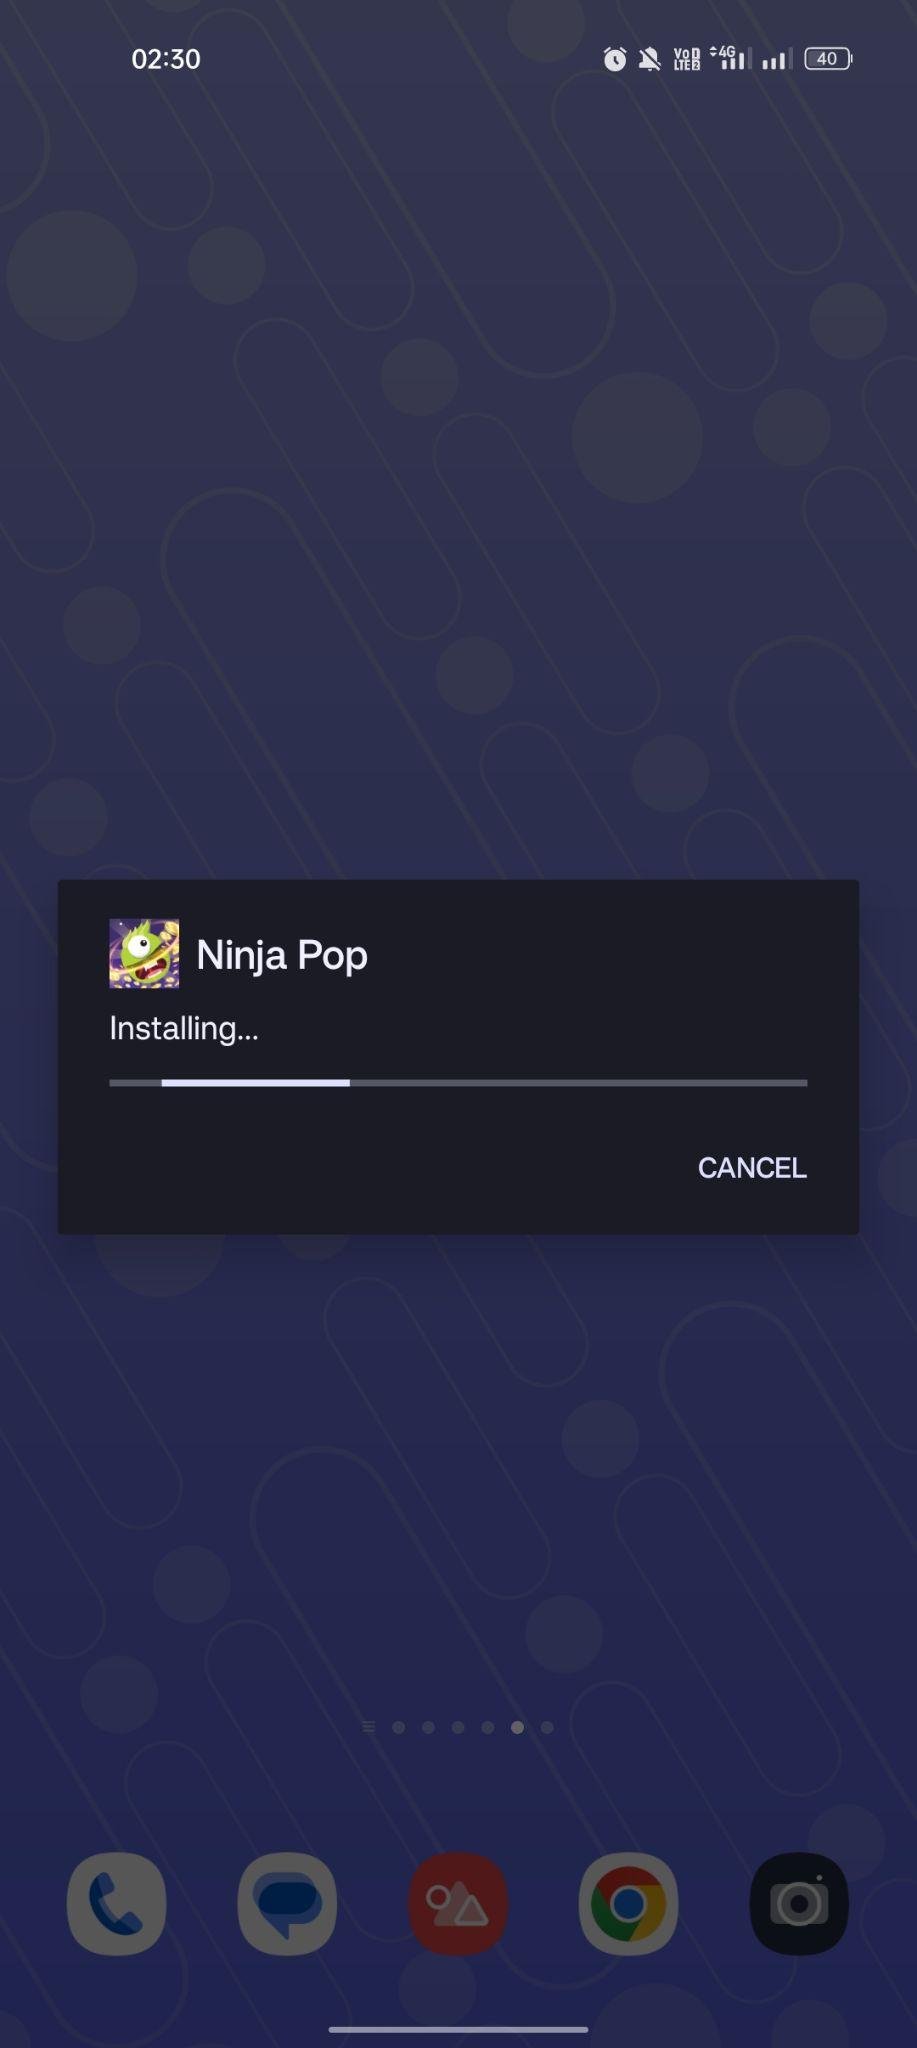 Pop Ninja apk installing